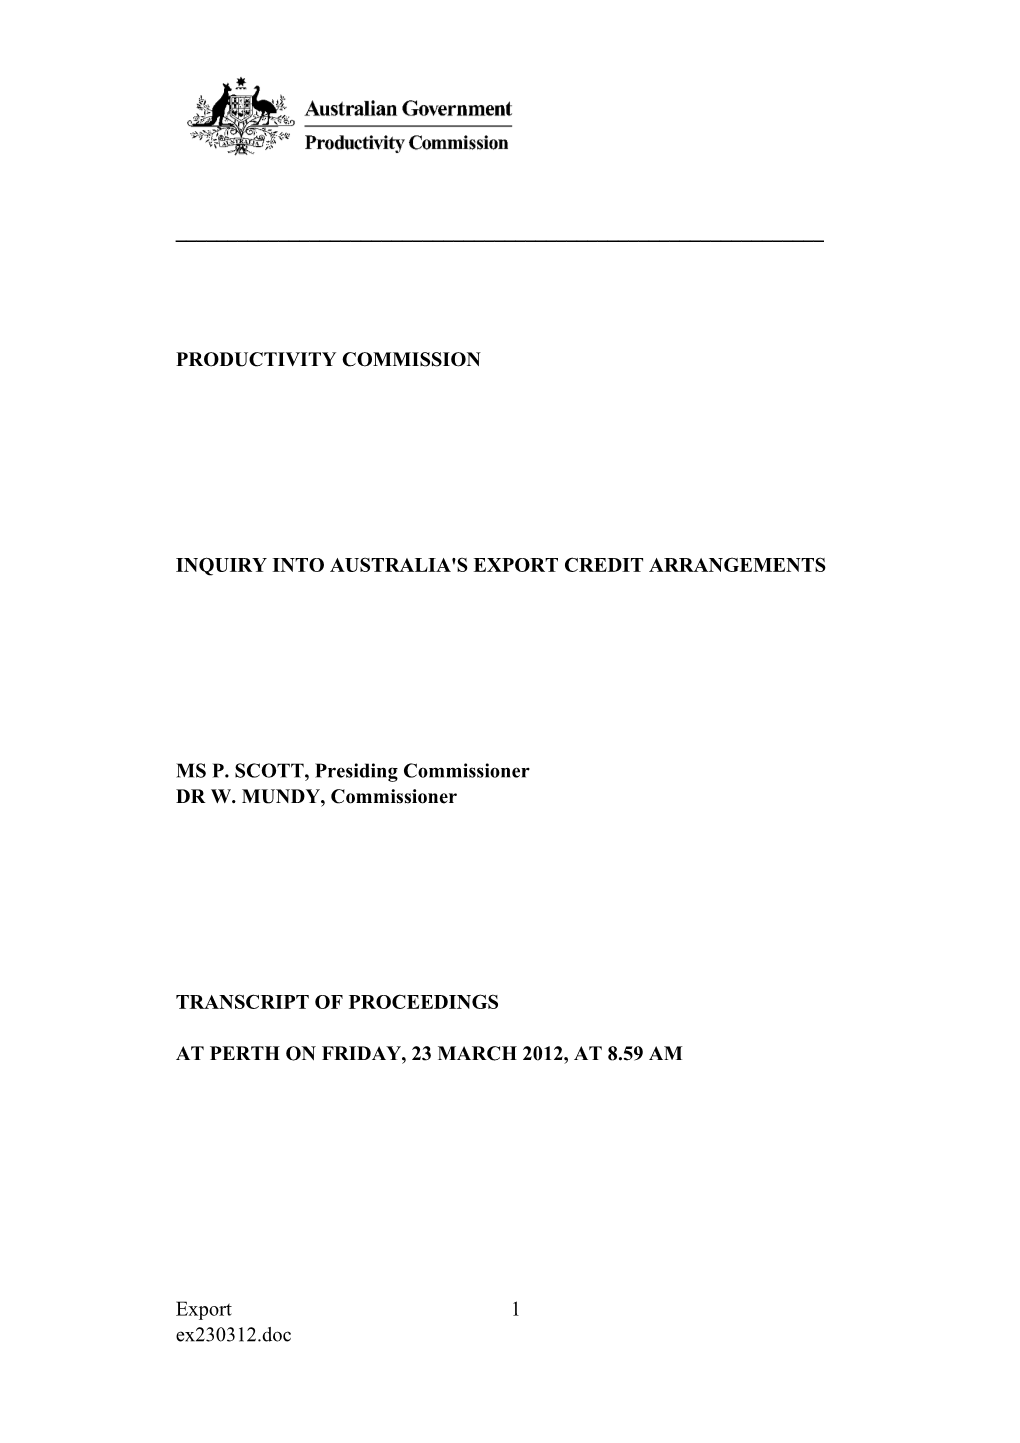 23 March 2012 - Perth Public Hearing Transcript - Australia's Export Credit Arrangments